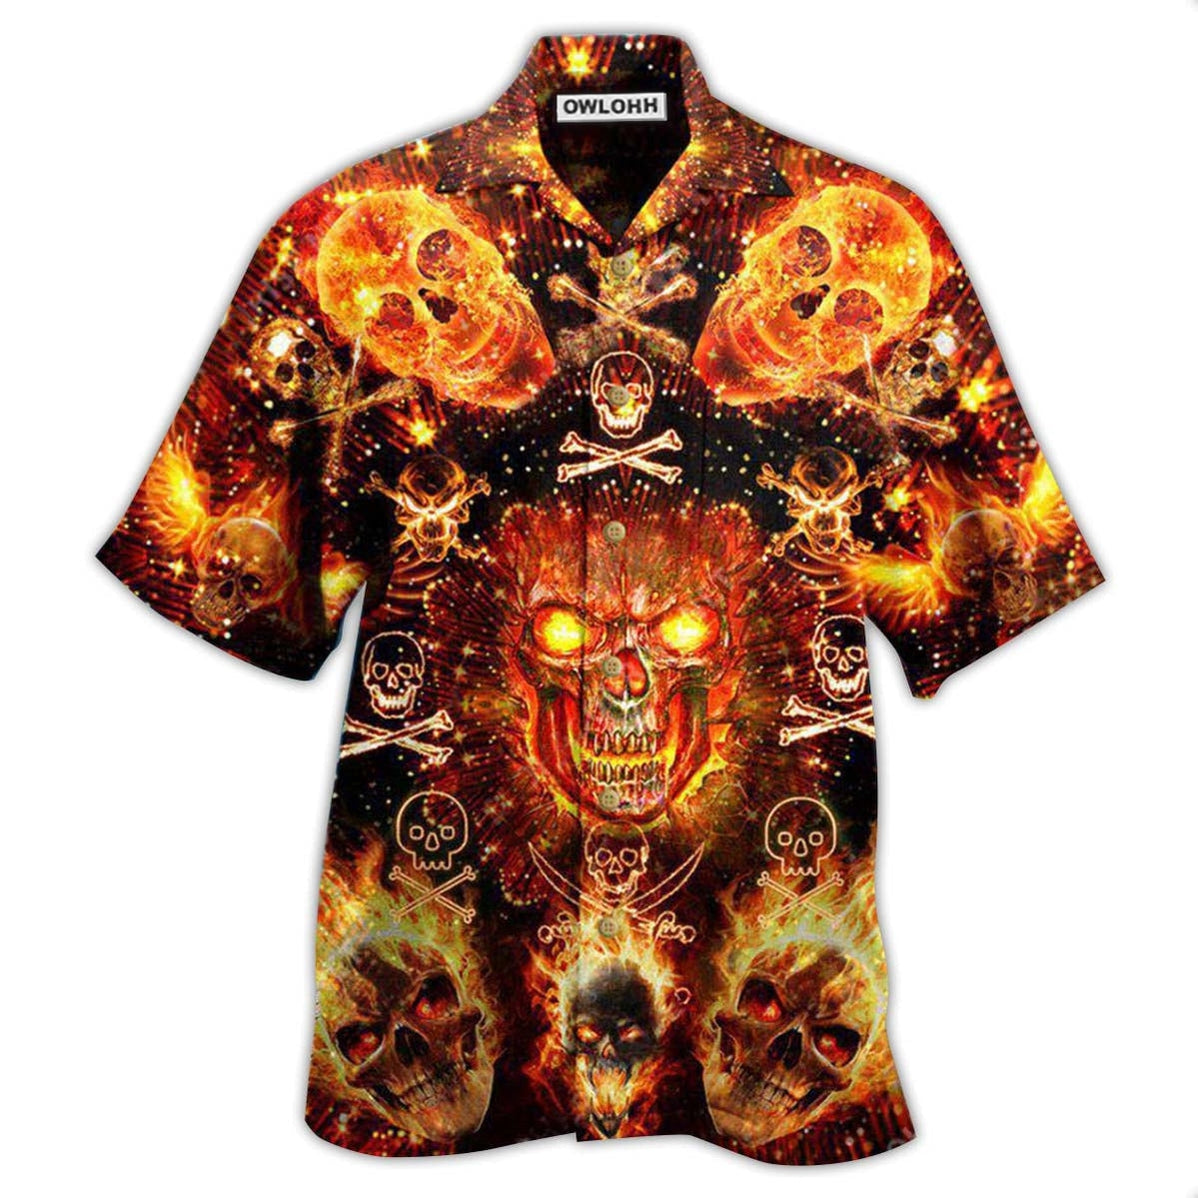 Hawaiian Shirt / Adults / S Skull Flaming - Hawaiian Shirt - Owls Matrix LTD